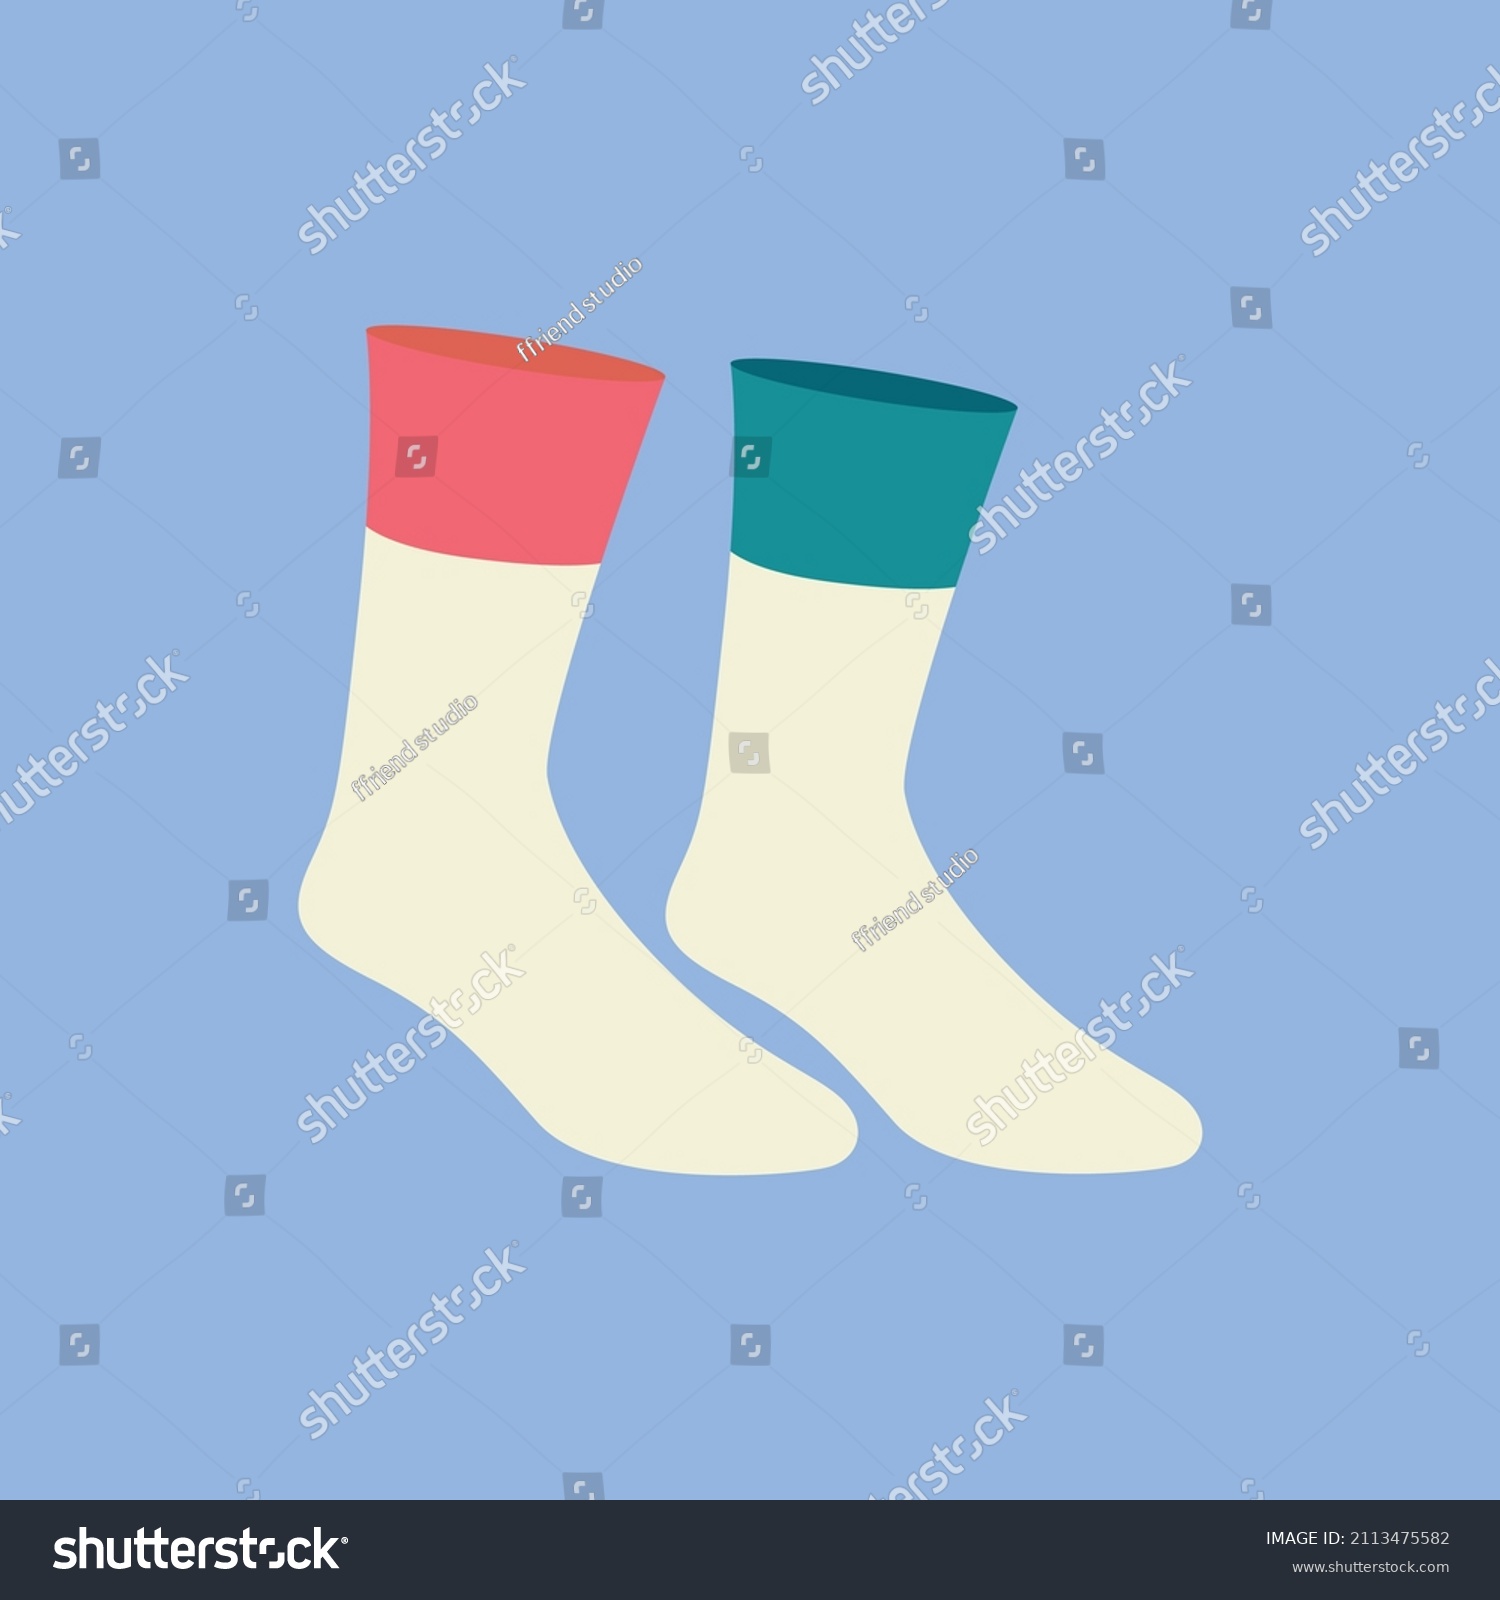 Socks Cartoon Flat Vector Illustration Stock Vector (Royalty Free ...